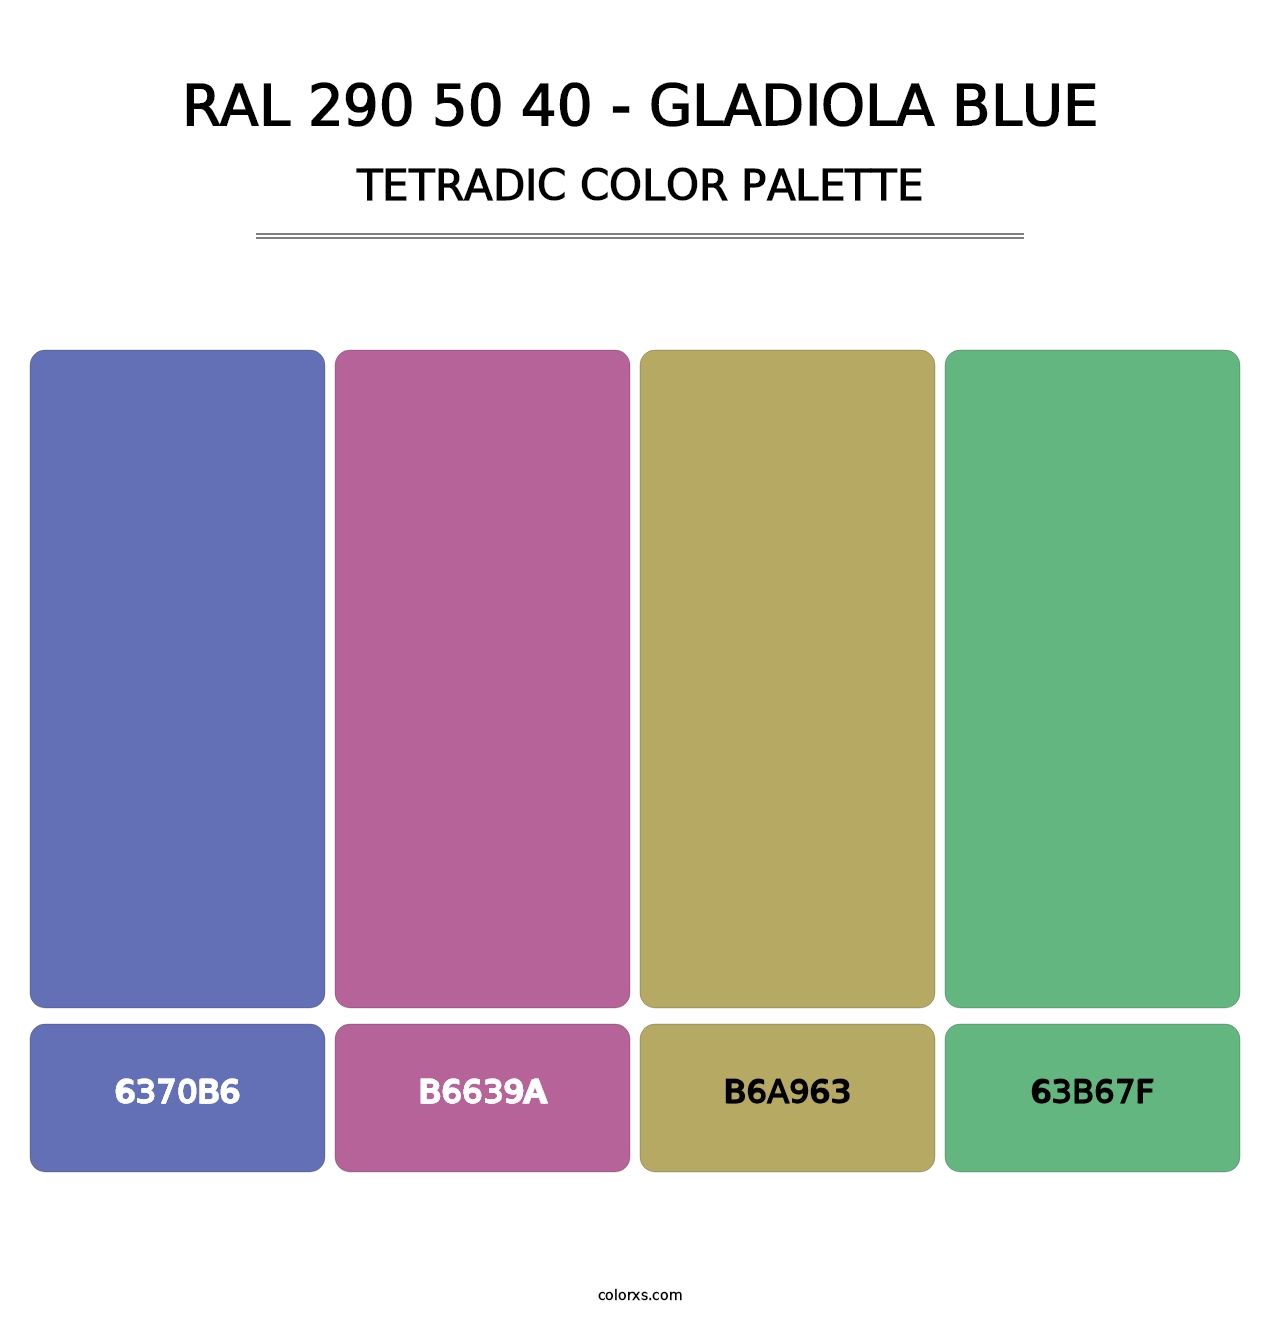 RAL 290 50 40 - Gladiola Blue - Tetradic Color Palette